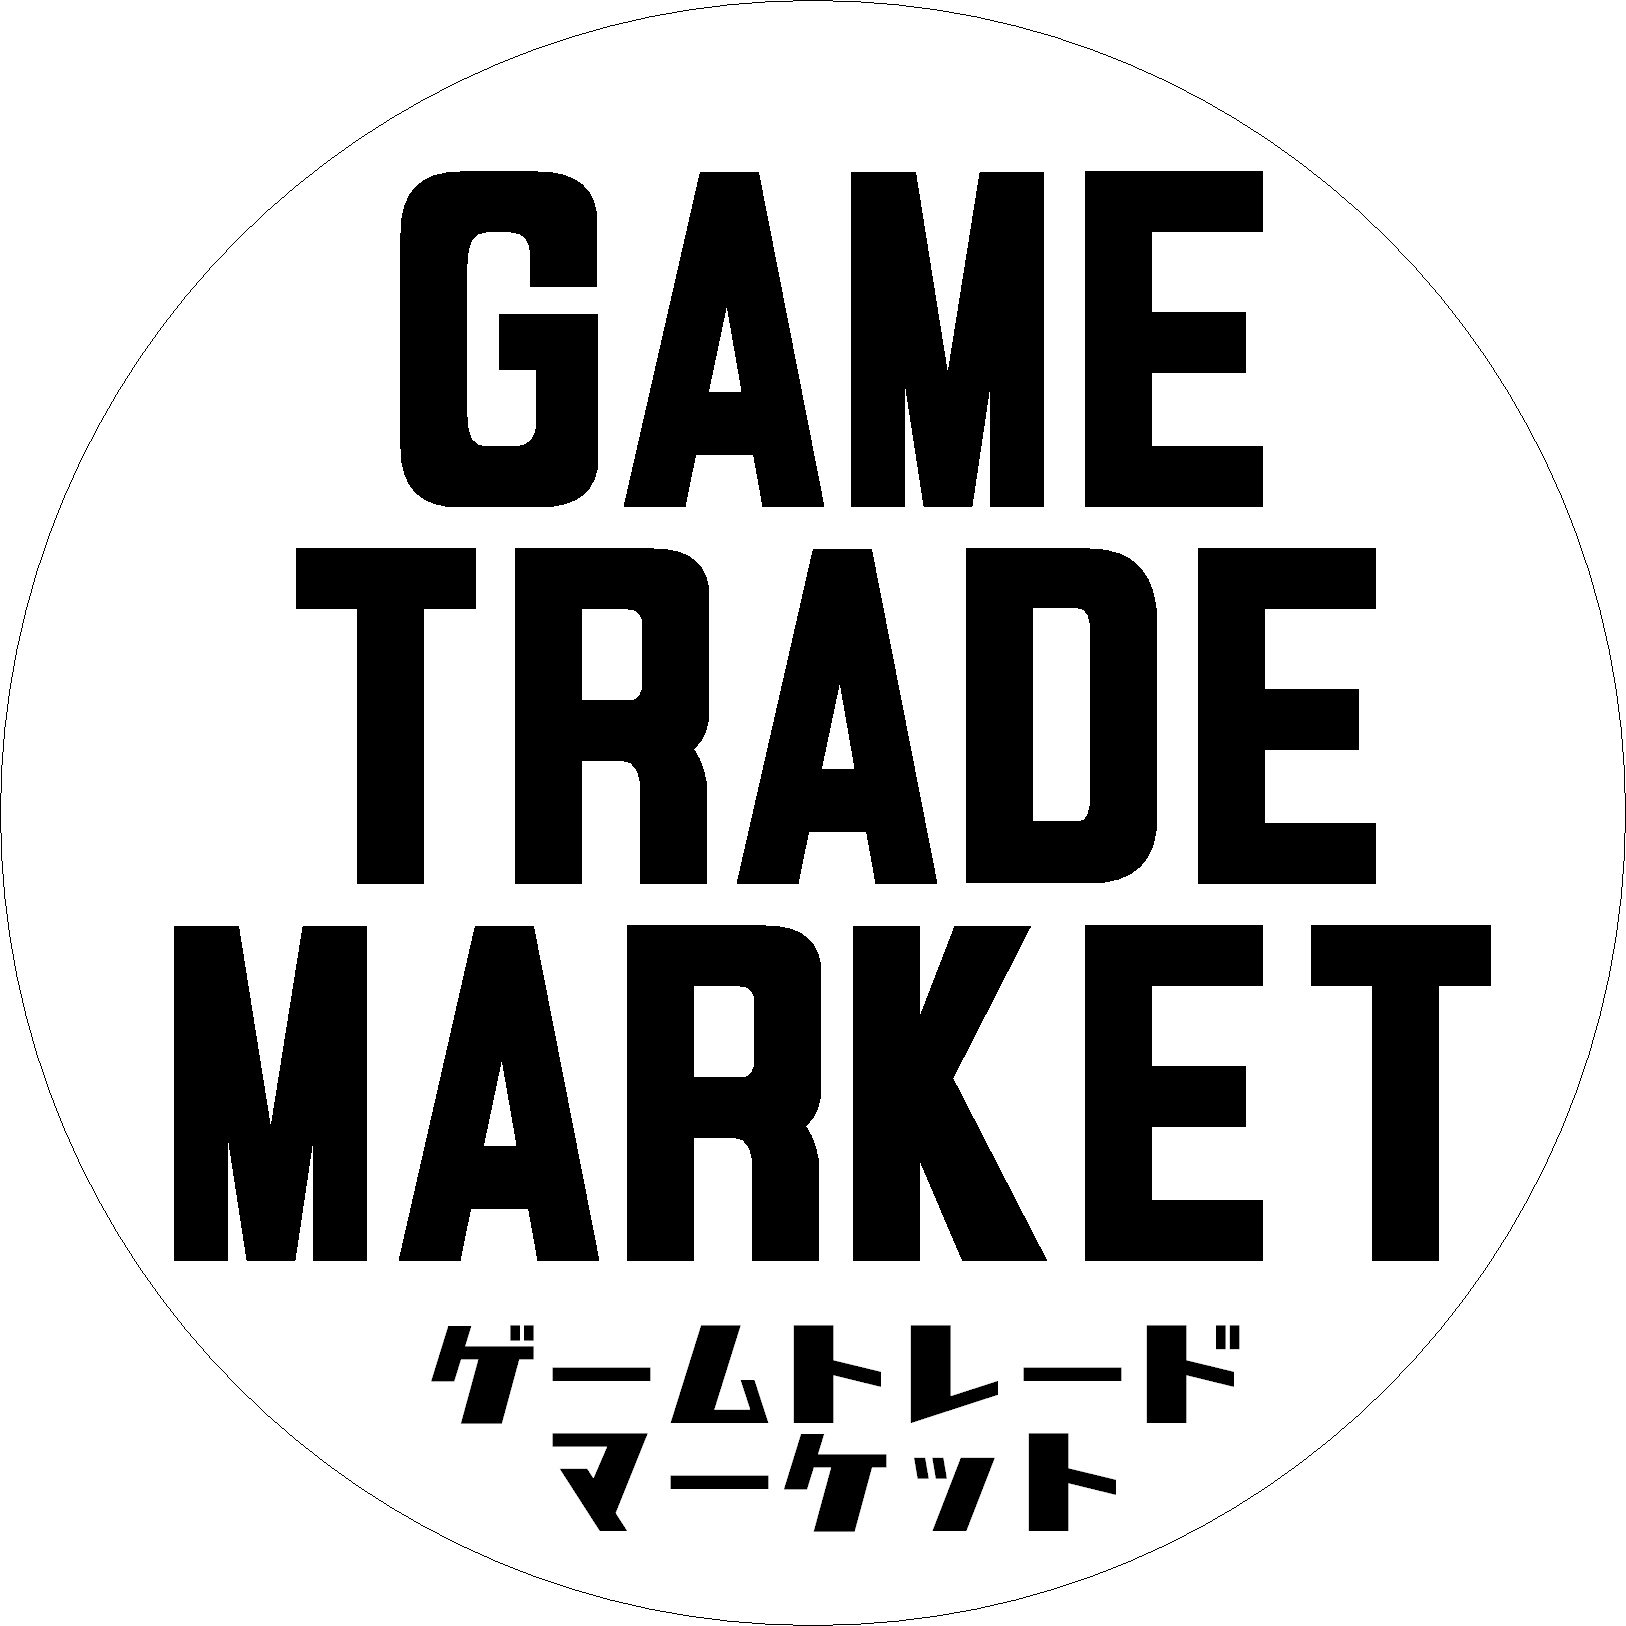 TVゲーム系専門フリーマーケット #GameTradeMarket の専用アカウントです。イベント詳細や出品物の情報を告知します。代表 @sekero セケロが管理しております。
4/21 高円寺Pundit'で #電波フリマ 参加します！